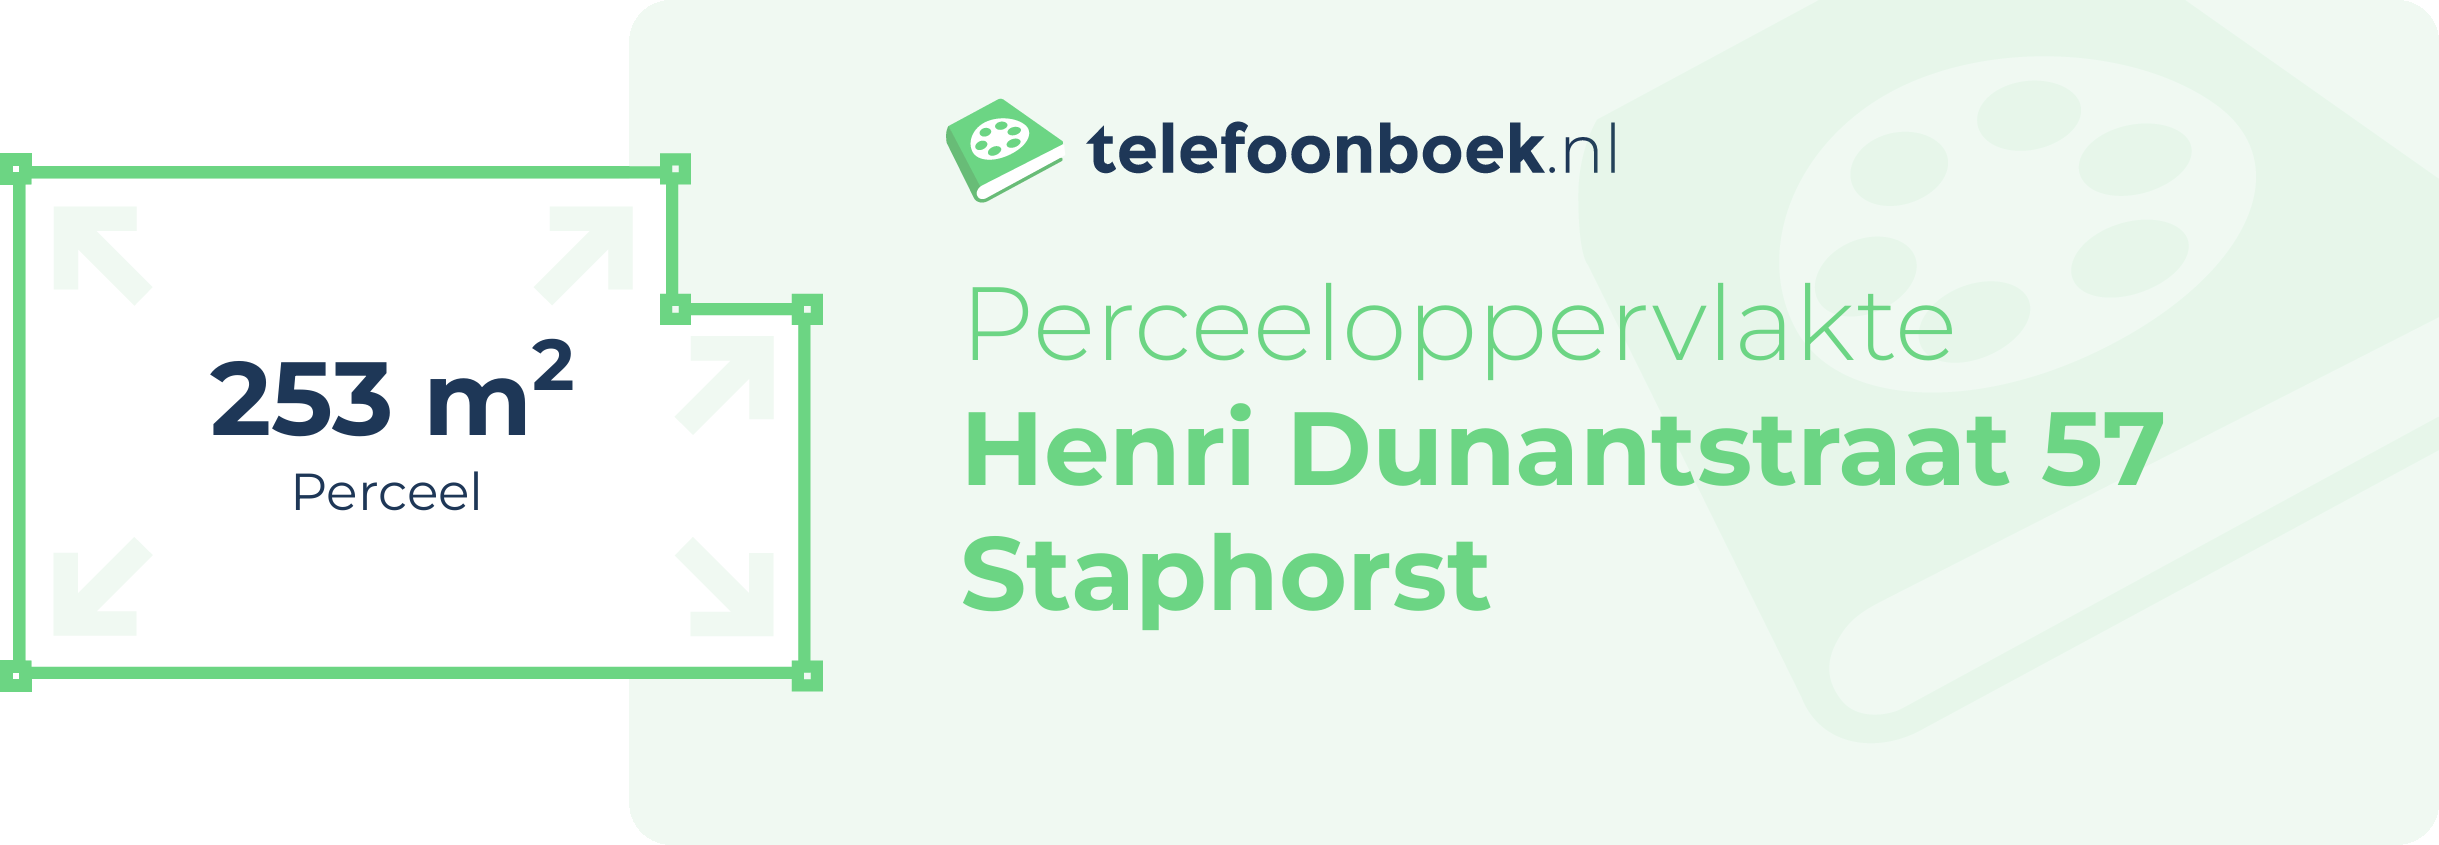 Perceeloppervlakte Henri Dunantstraat 57 Staphorst